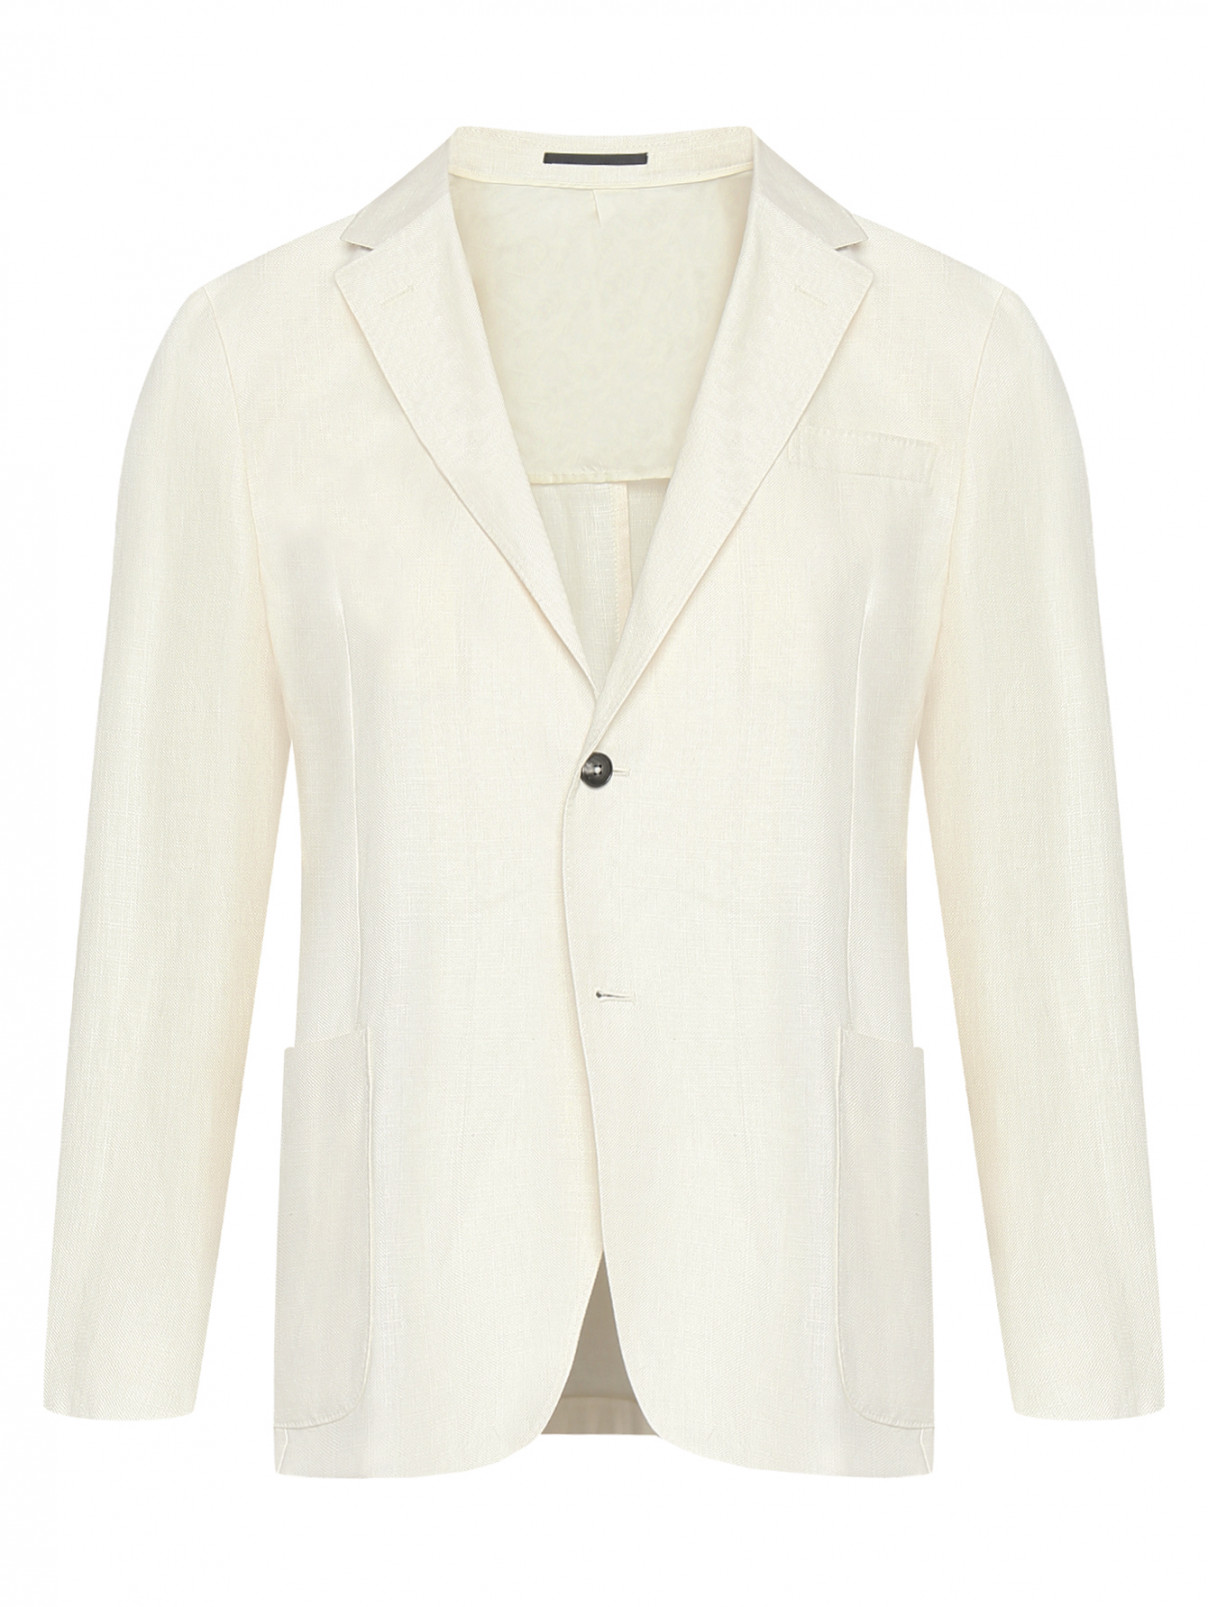 Пиджак изо льна с накладными карманами Zegna  –  Общий вид  – Цвет:  Белый